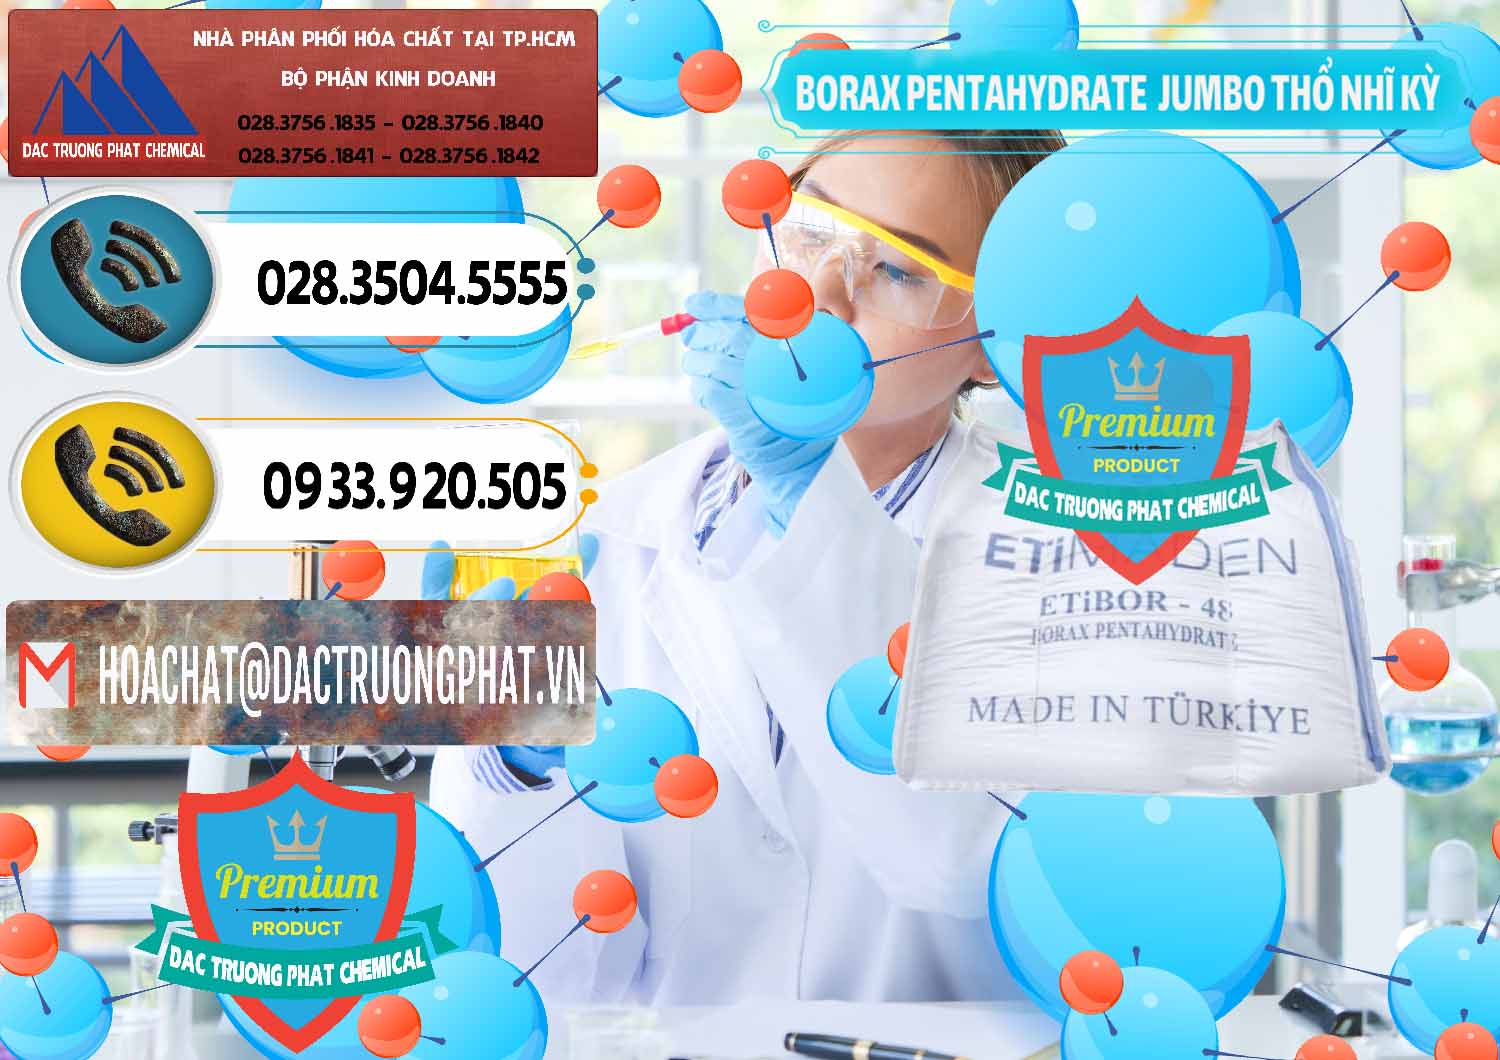 Chuyên bán ( phân phối ) Borax Pentahydrate Bao Jumbo ( Bành ) Thổ Nhĩ Kỳ Turkey - 0424 - Công ty phân phối ( cung cấp ) hóa chất tại TP.HCM - hoachatdetnhuom.vn